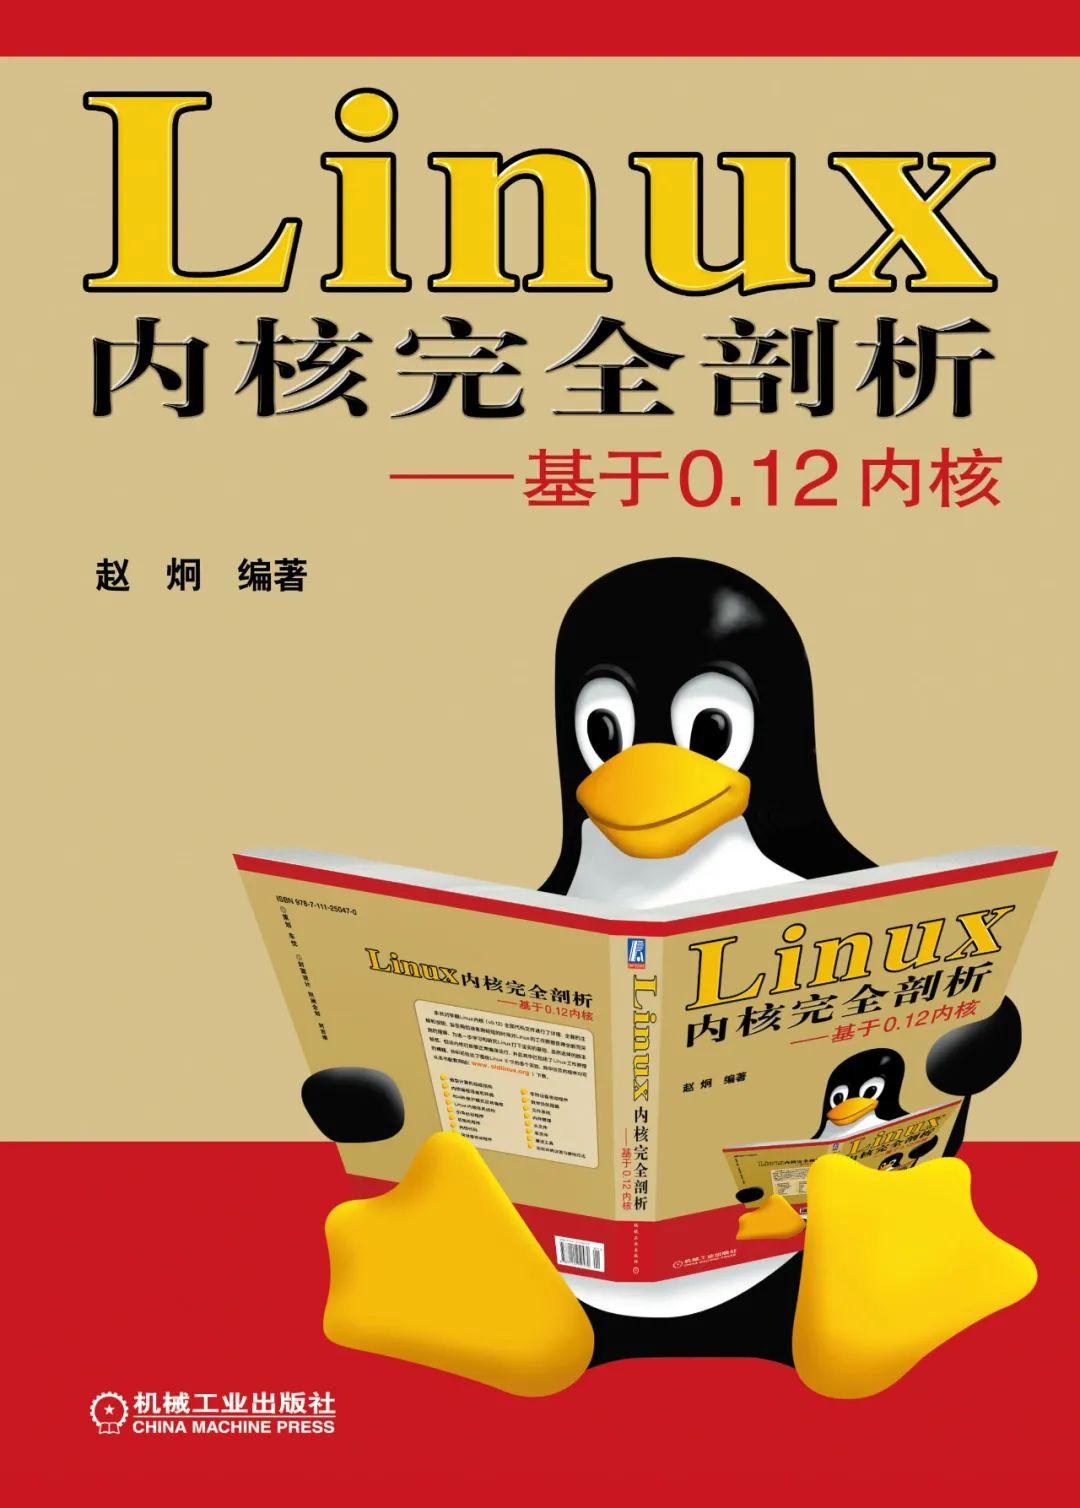 简略而有吸引力的标题：轻松搭建Linux BSP开发环境